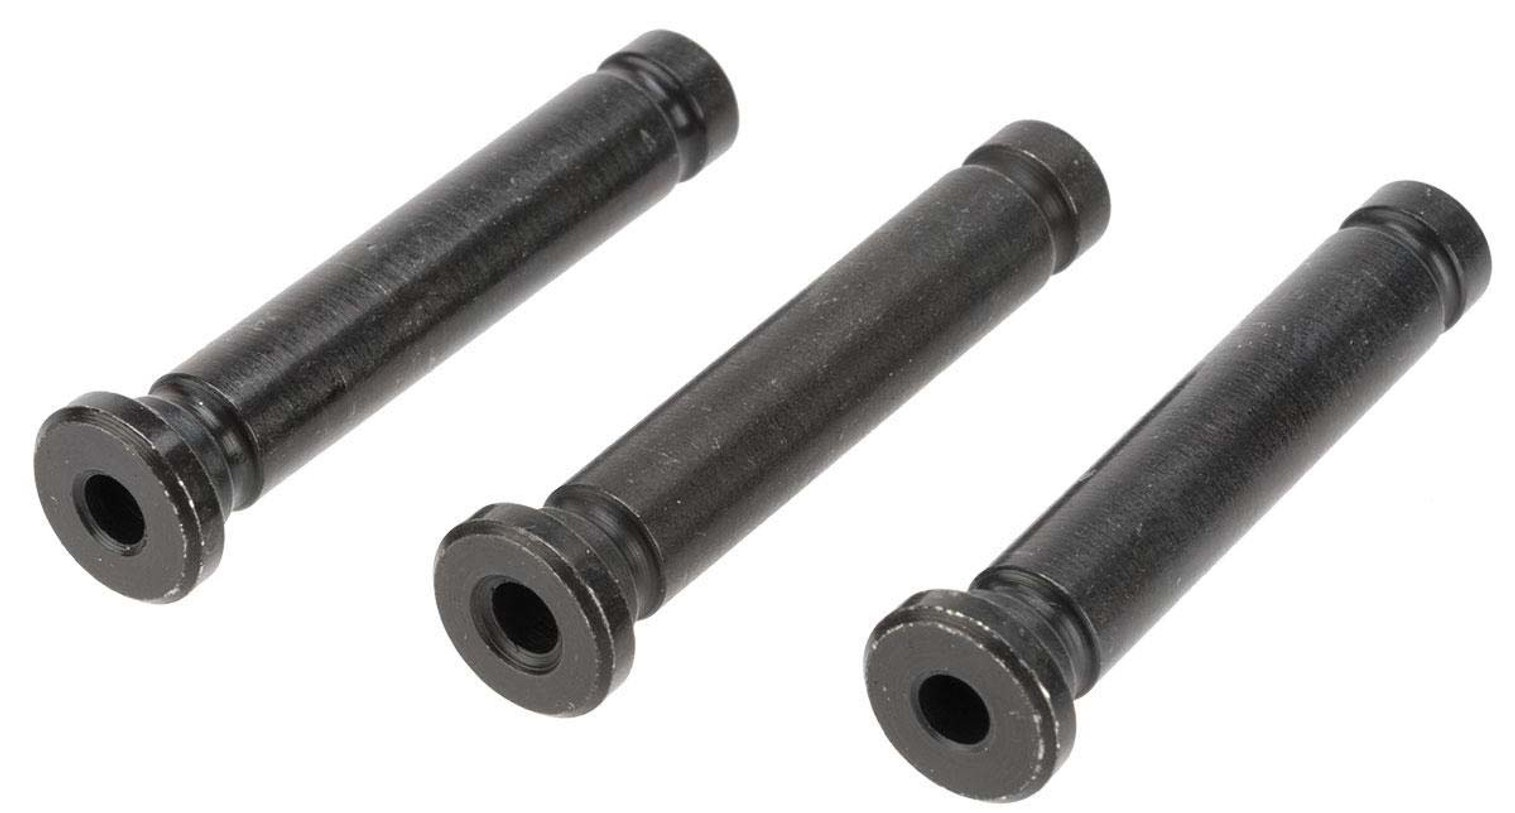 A&K Metal Masada Body Pin - Set of 3 Pins